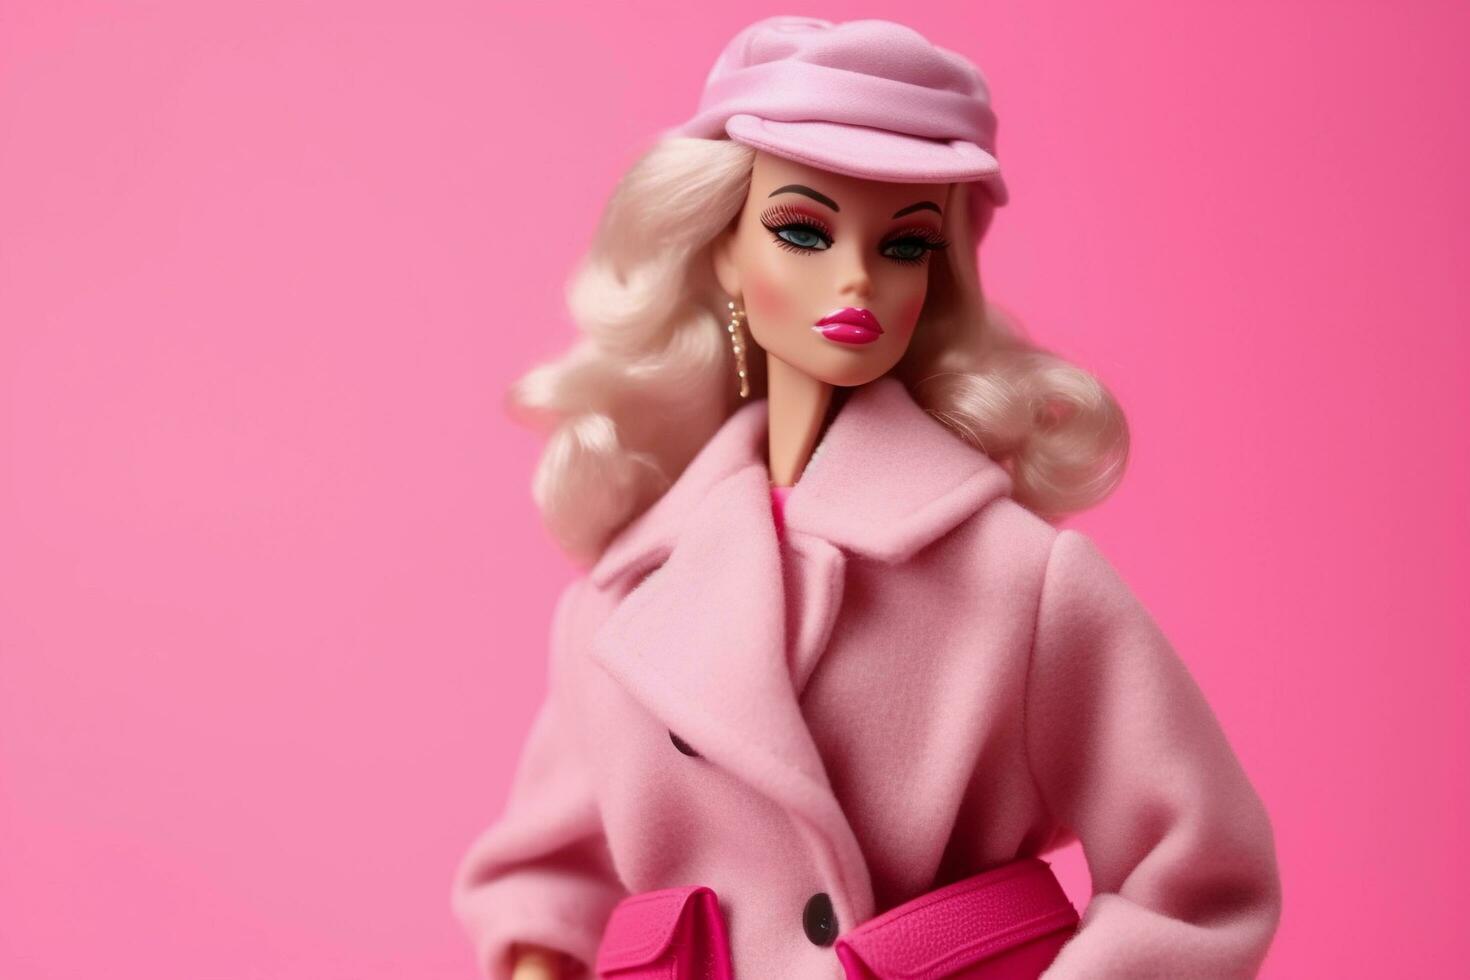 een Barbie pop met een roze jas en hoed foto